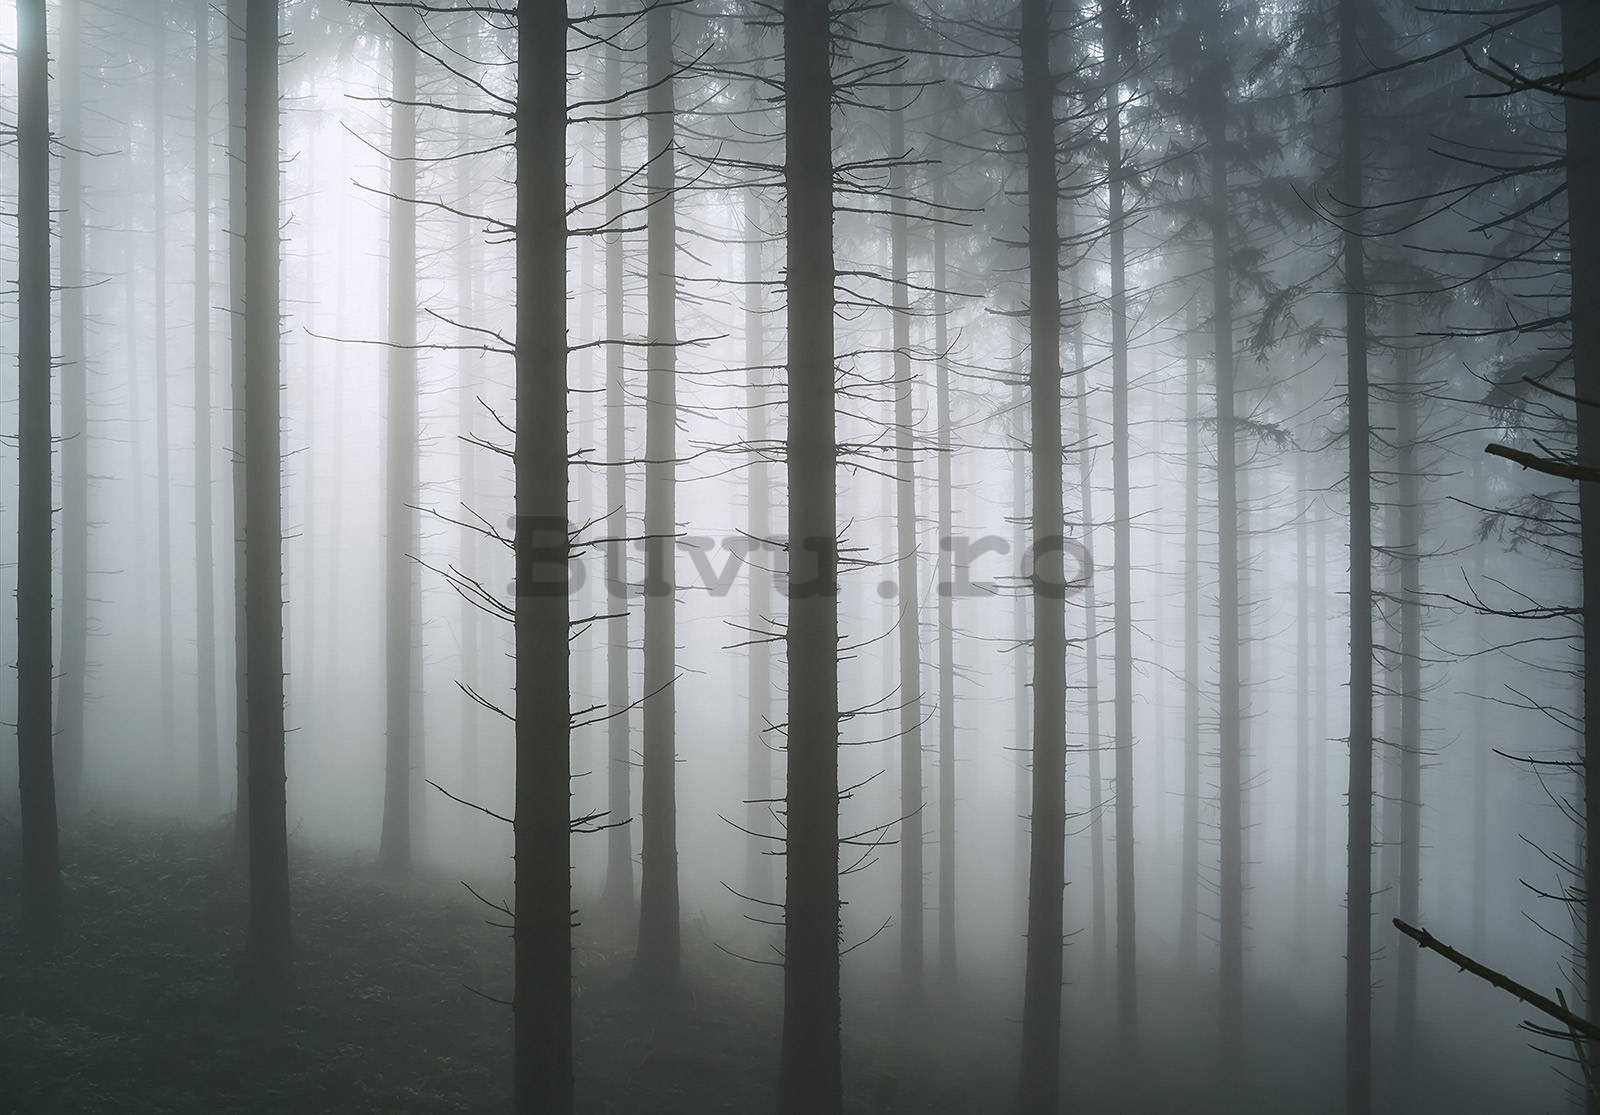 Fototapet vlies: Pădure bântuită (1) - 254x184 cm